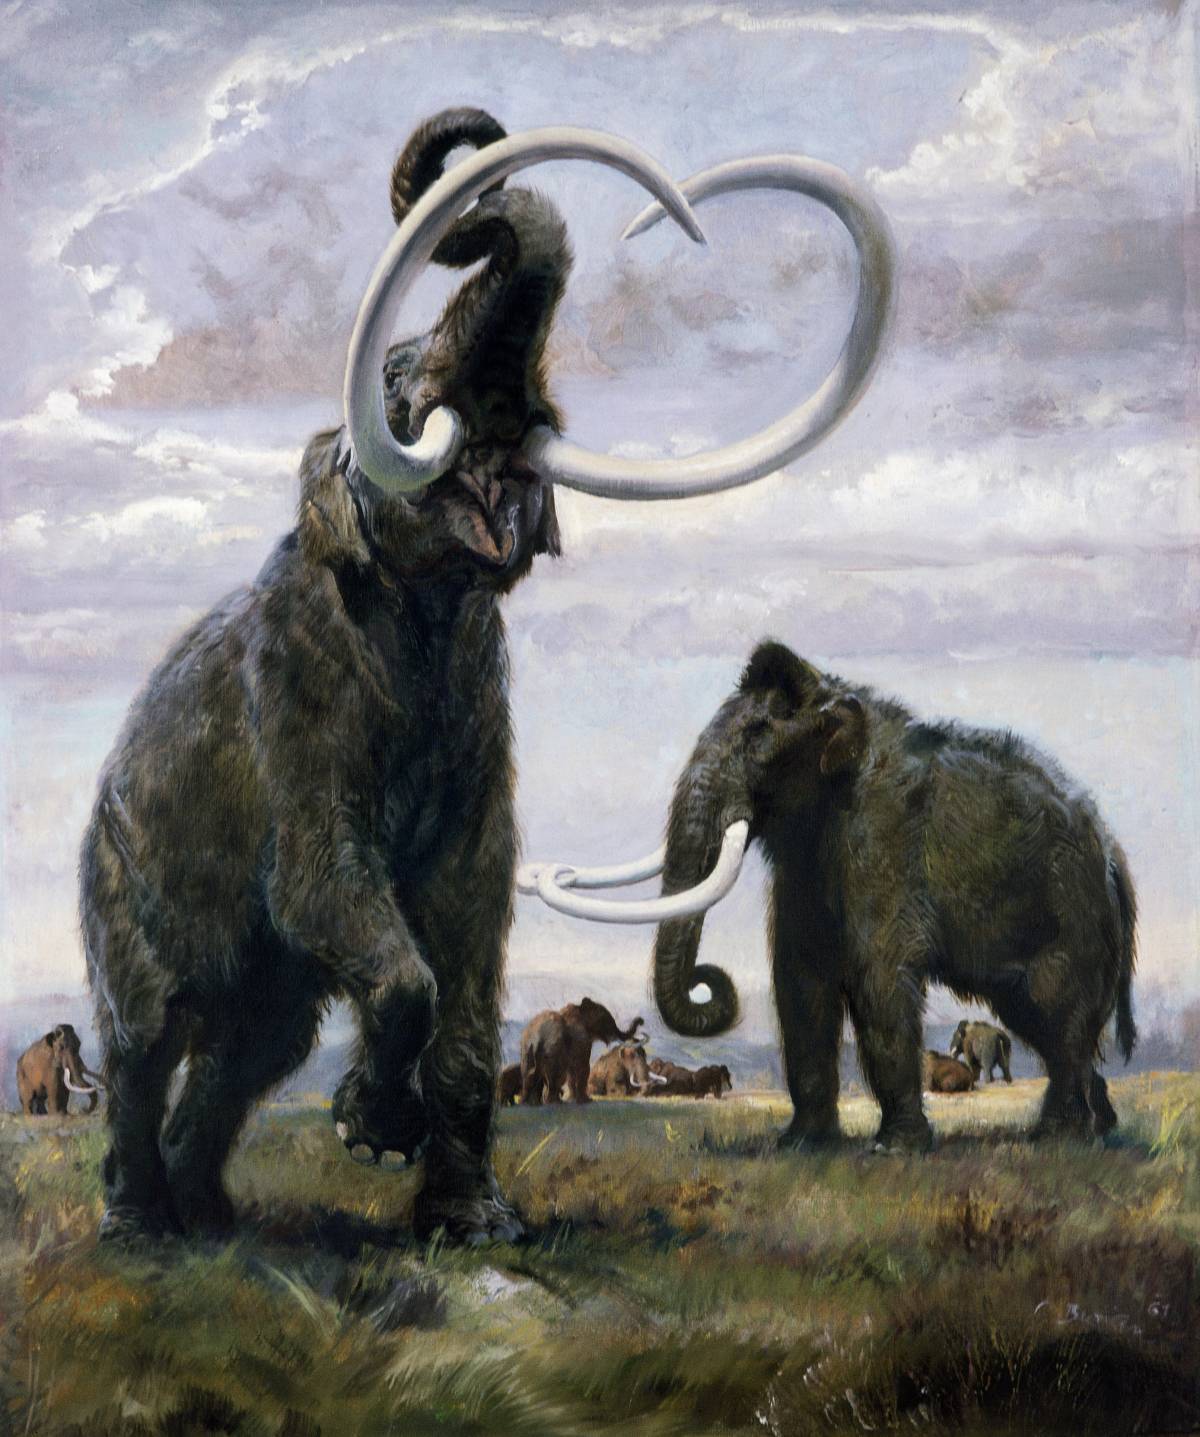 Il mammut ritorna sulla terra. A 4mila anni dall'estinzione